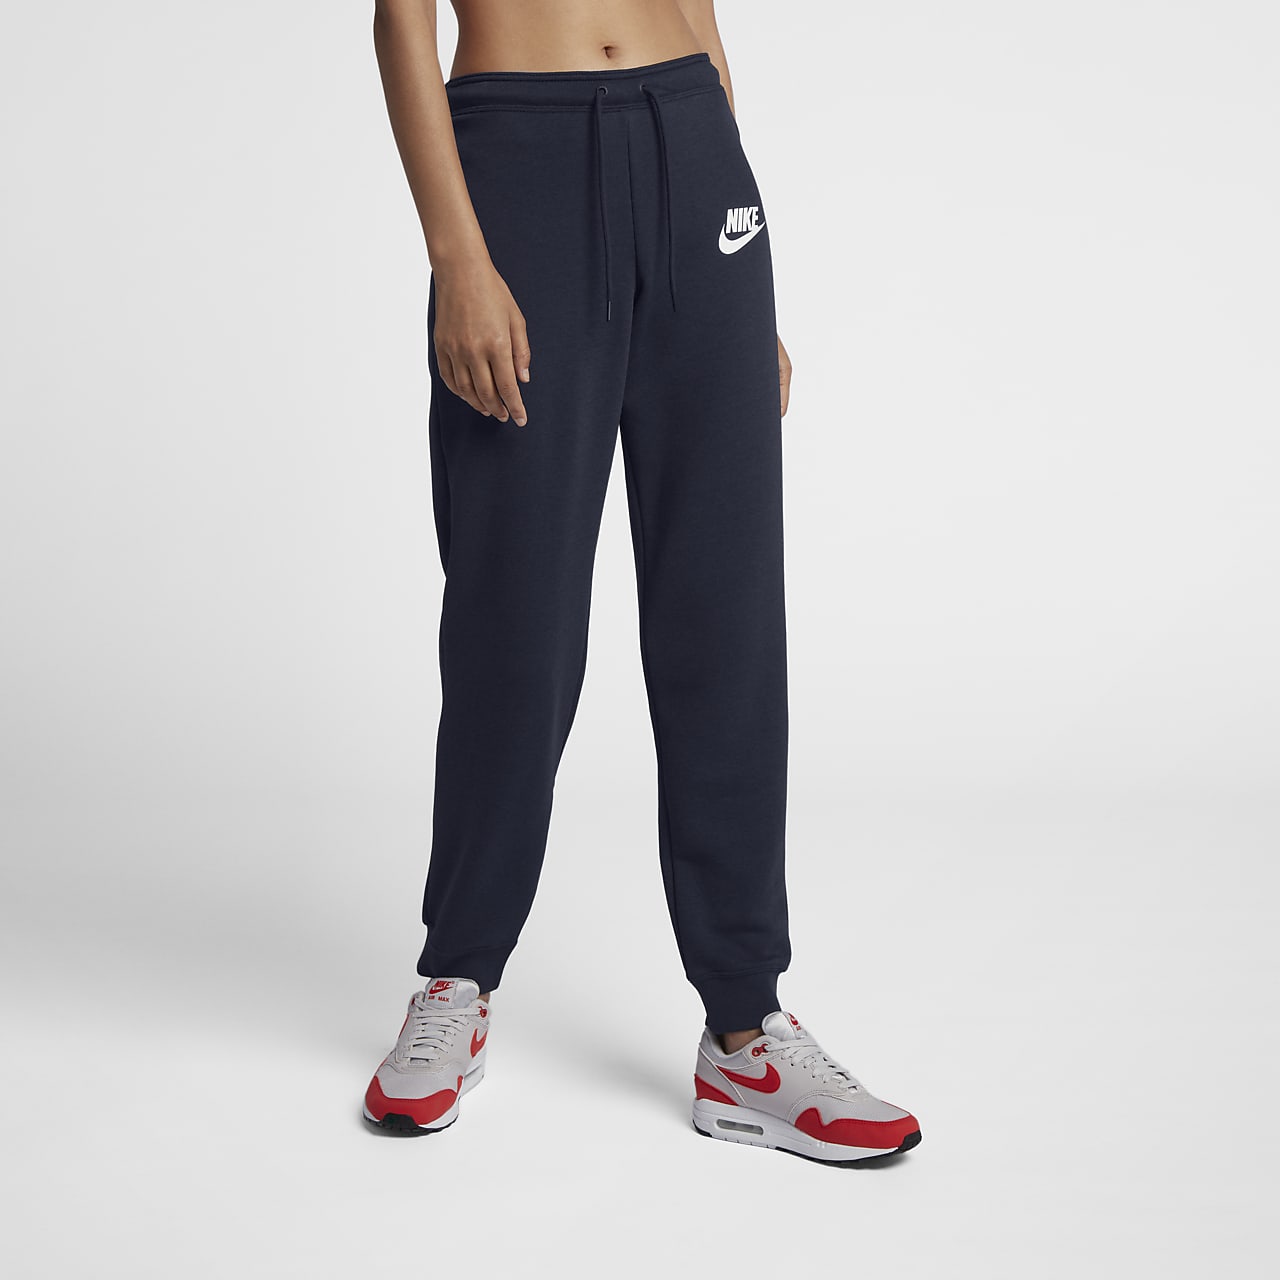 Pantalon Nike Sportswear Rally pour Femme